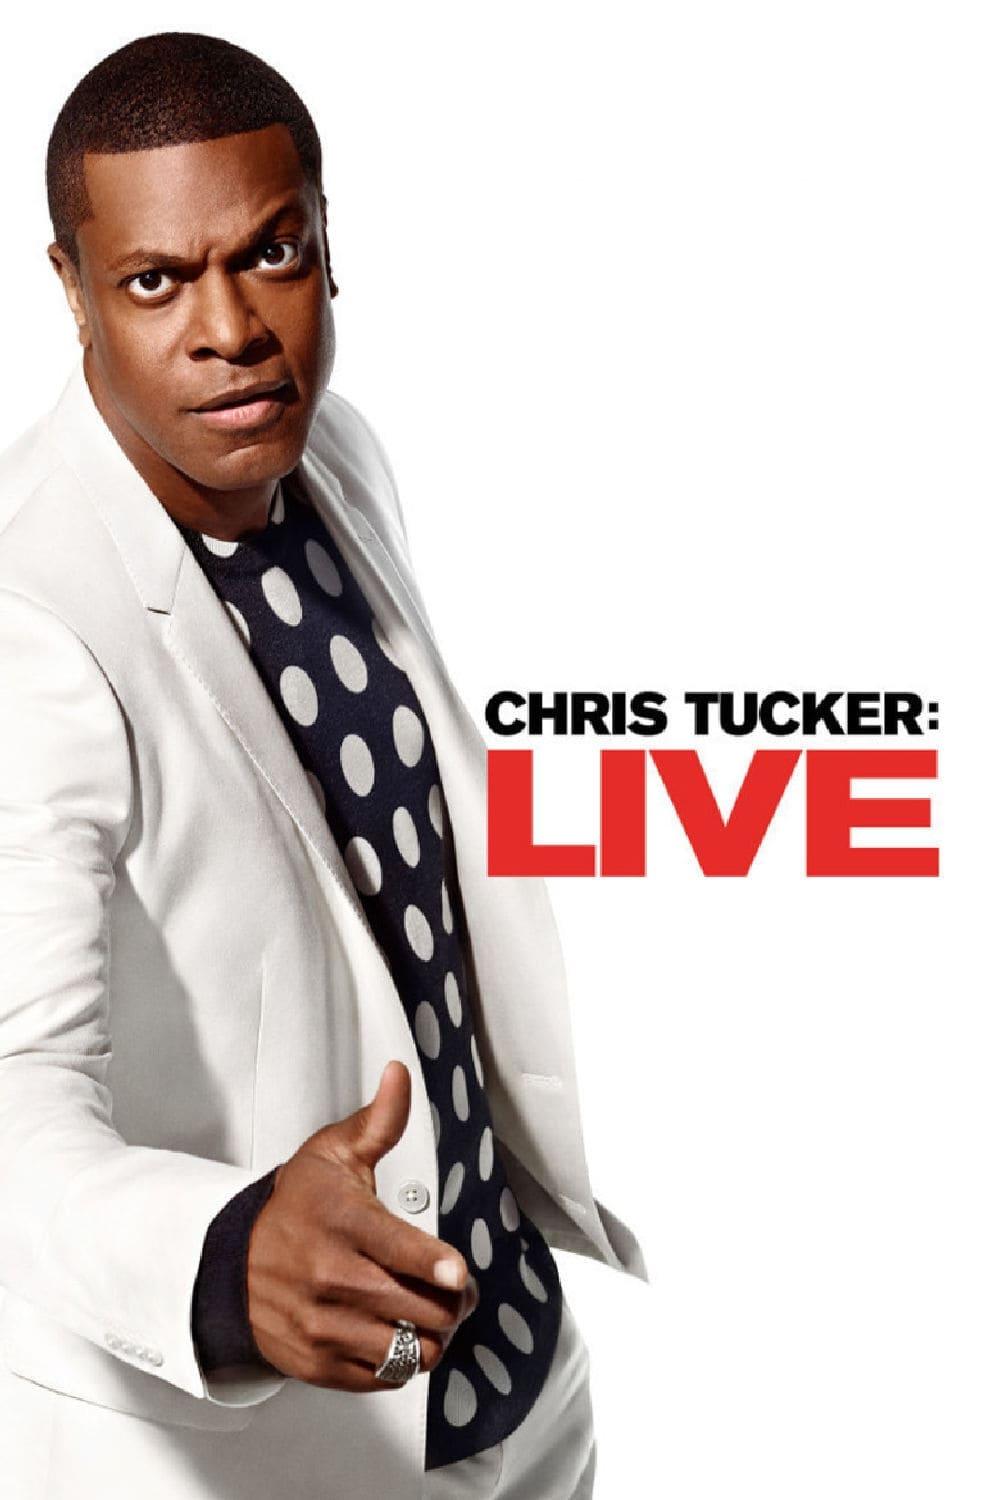 Chris Tucker: Live poster